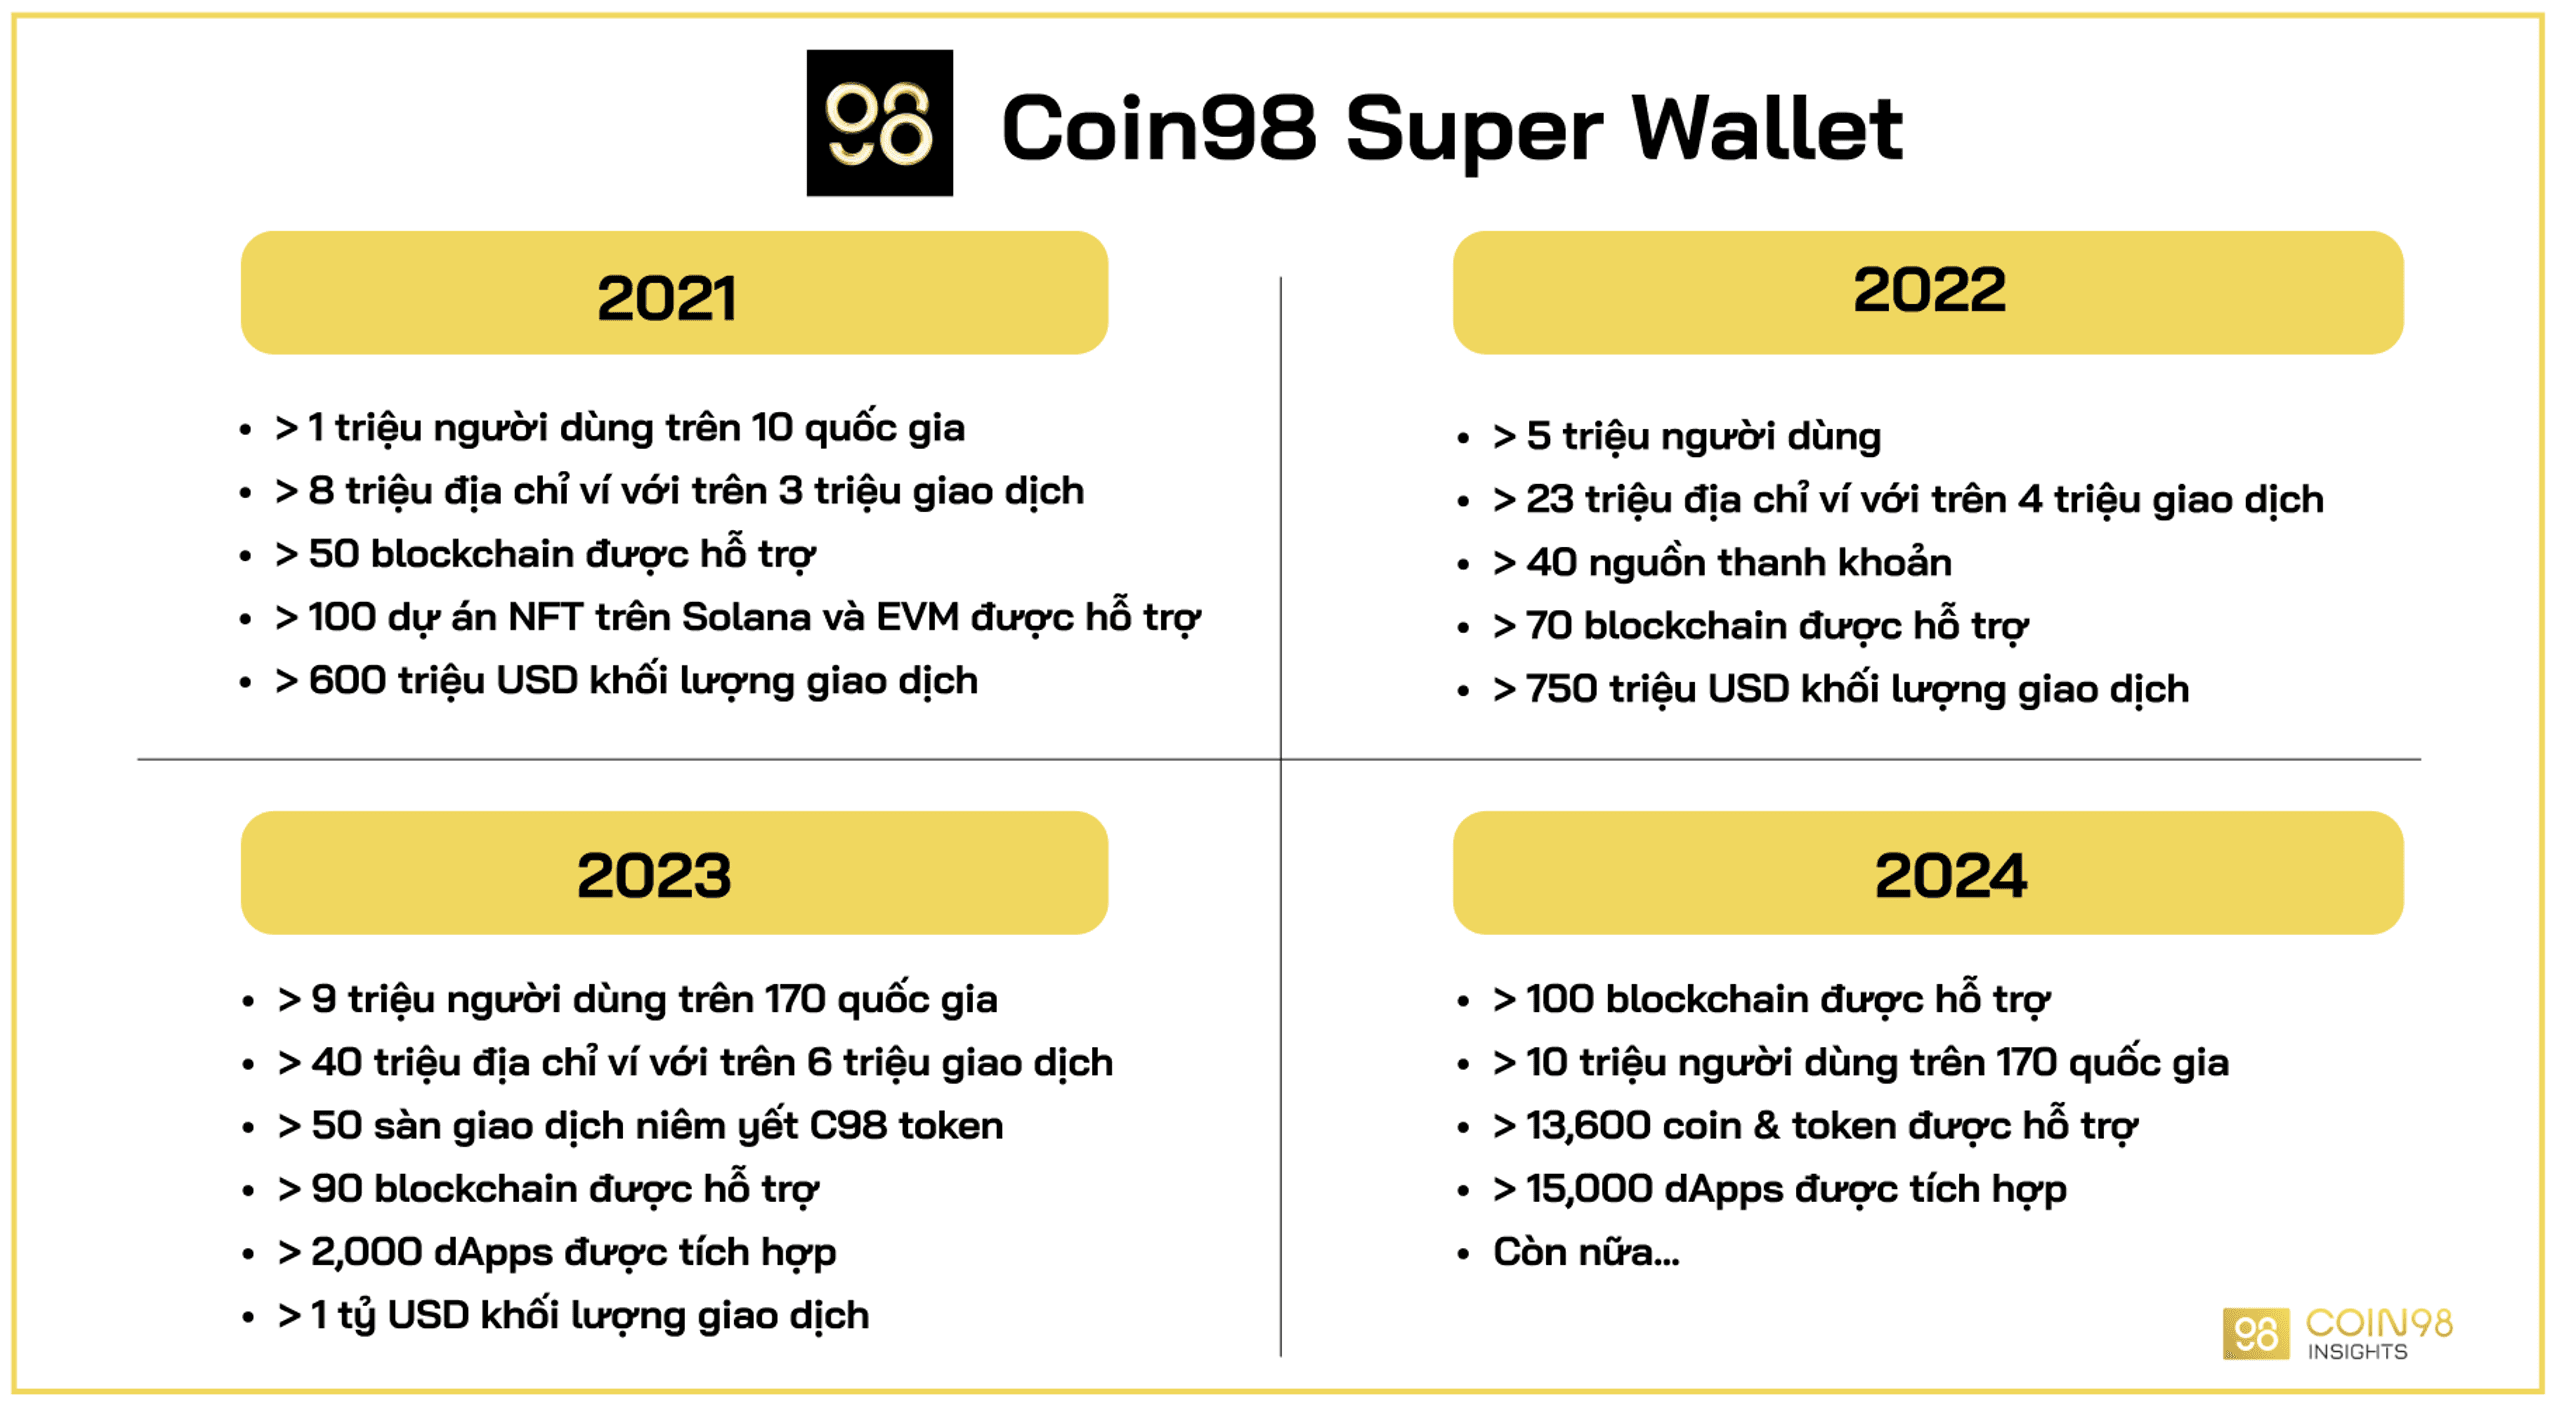 các cột mốc phát triển của Coin98 Super Wallet